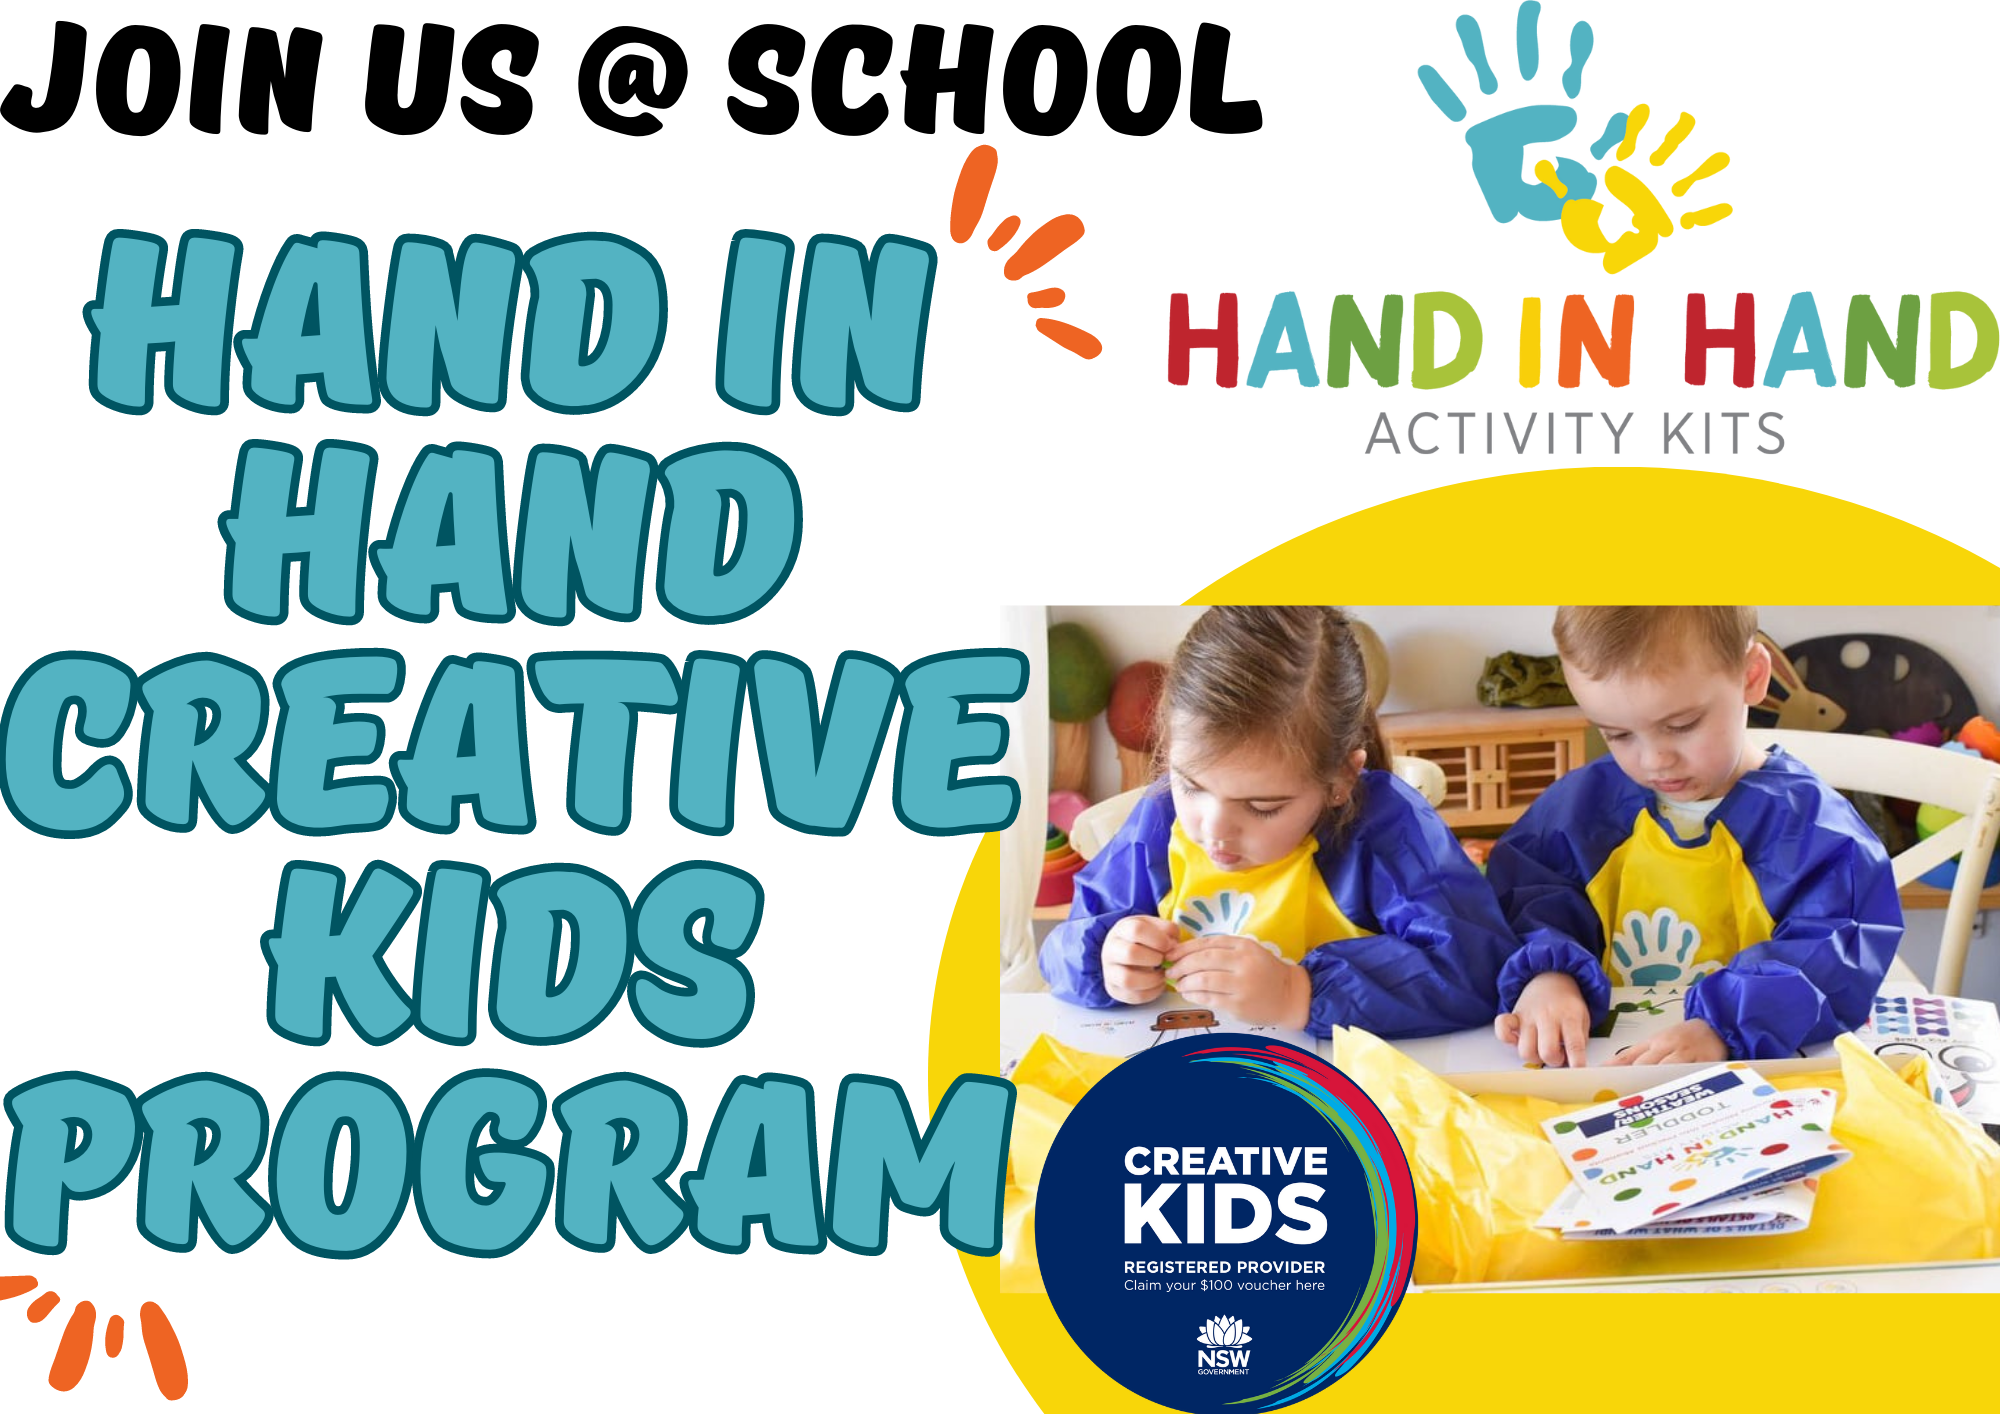 Hand In Hand Creative School Program